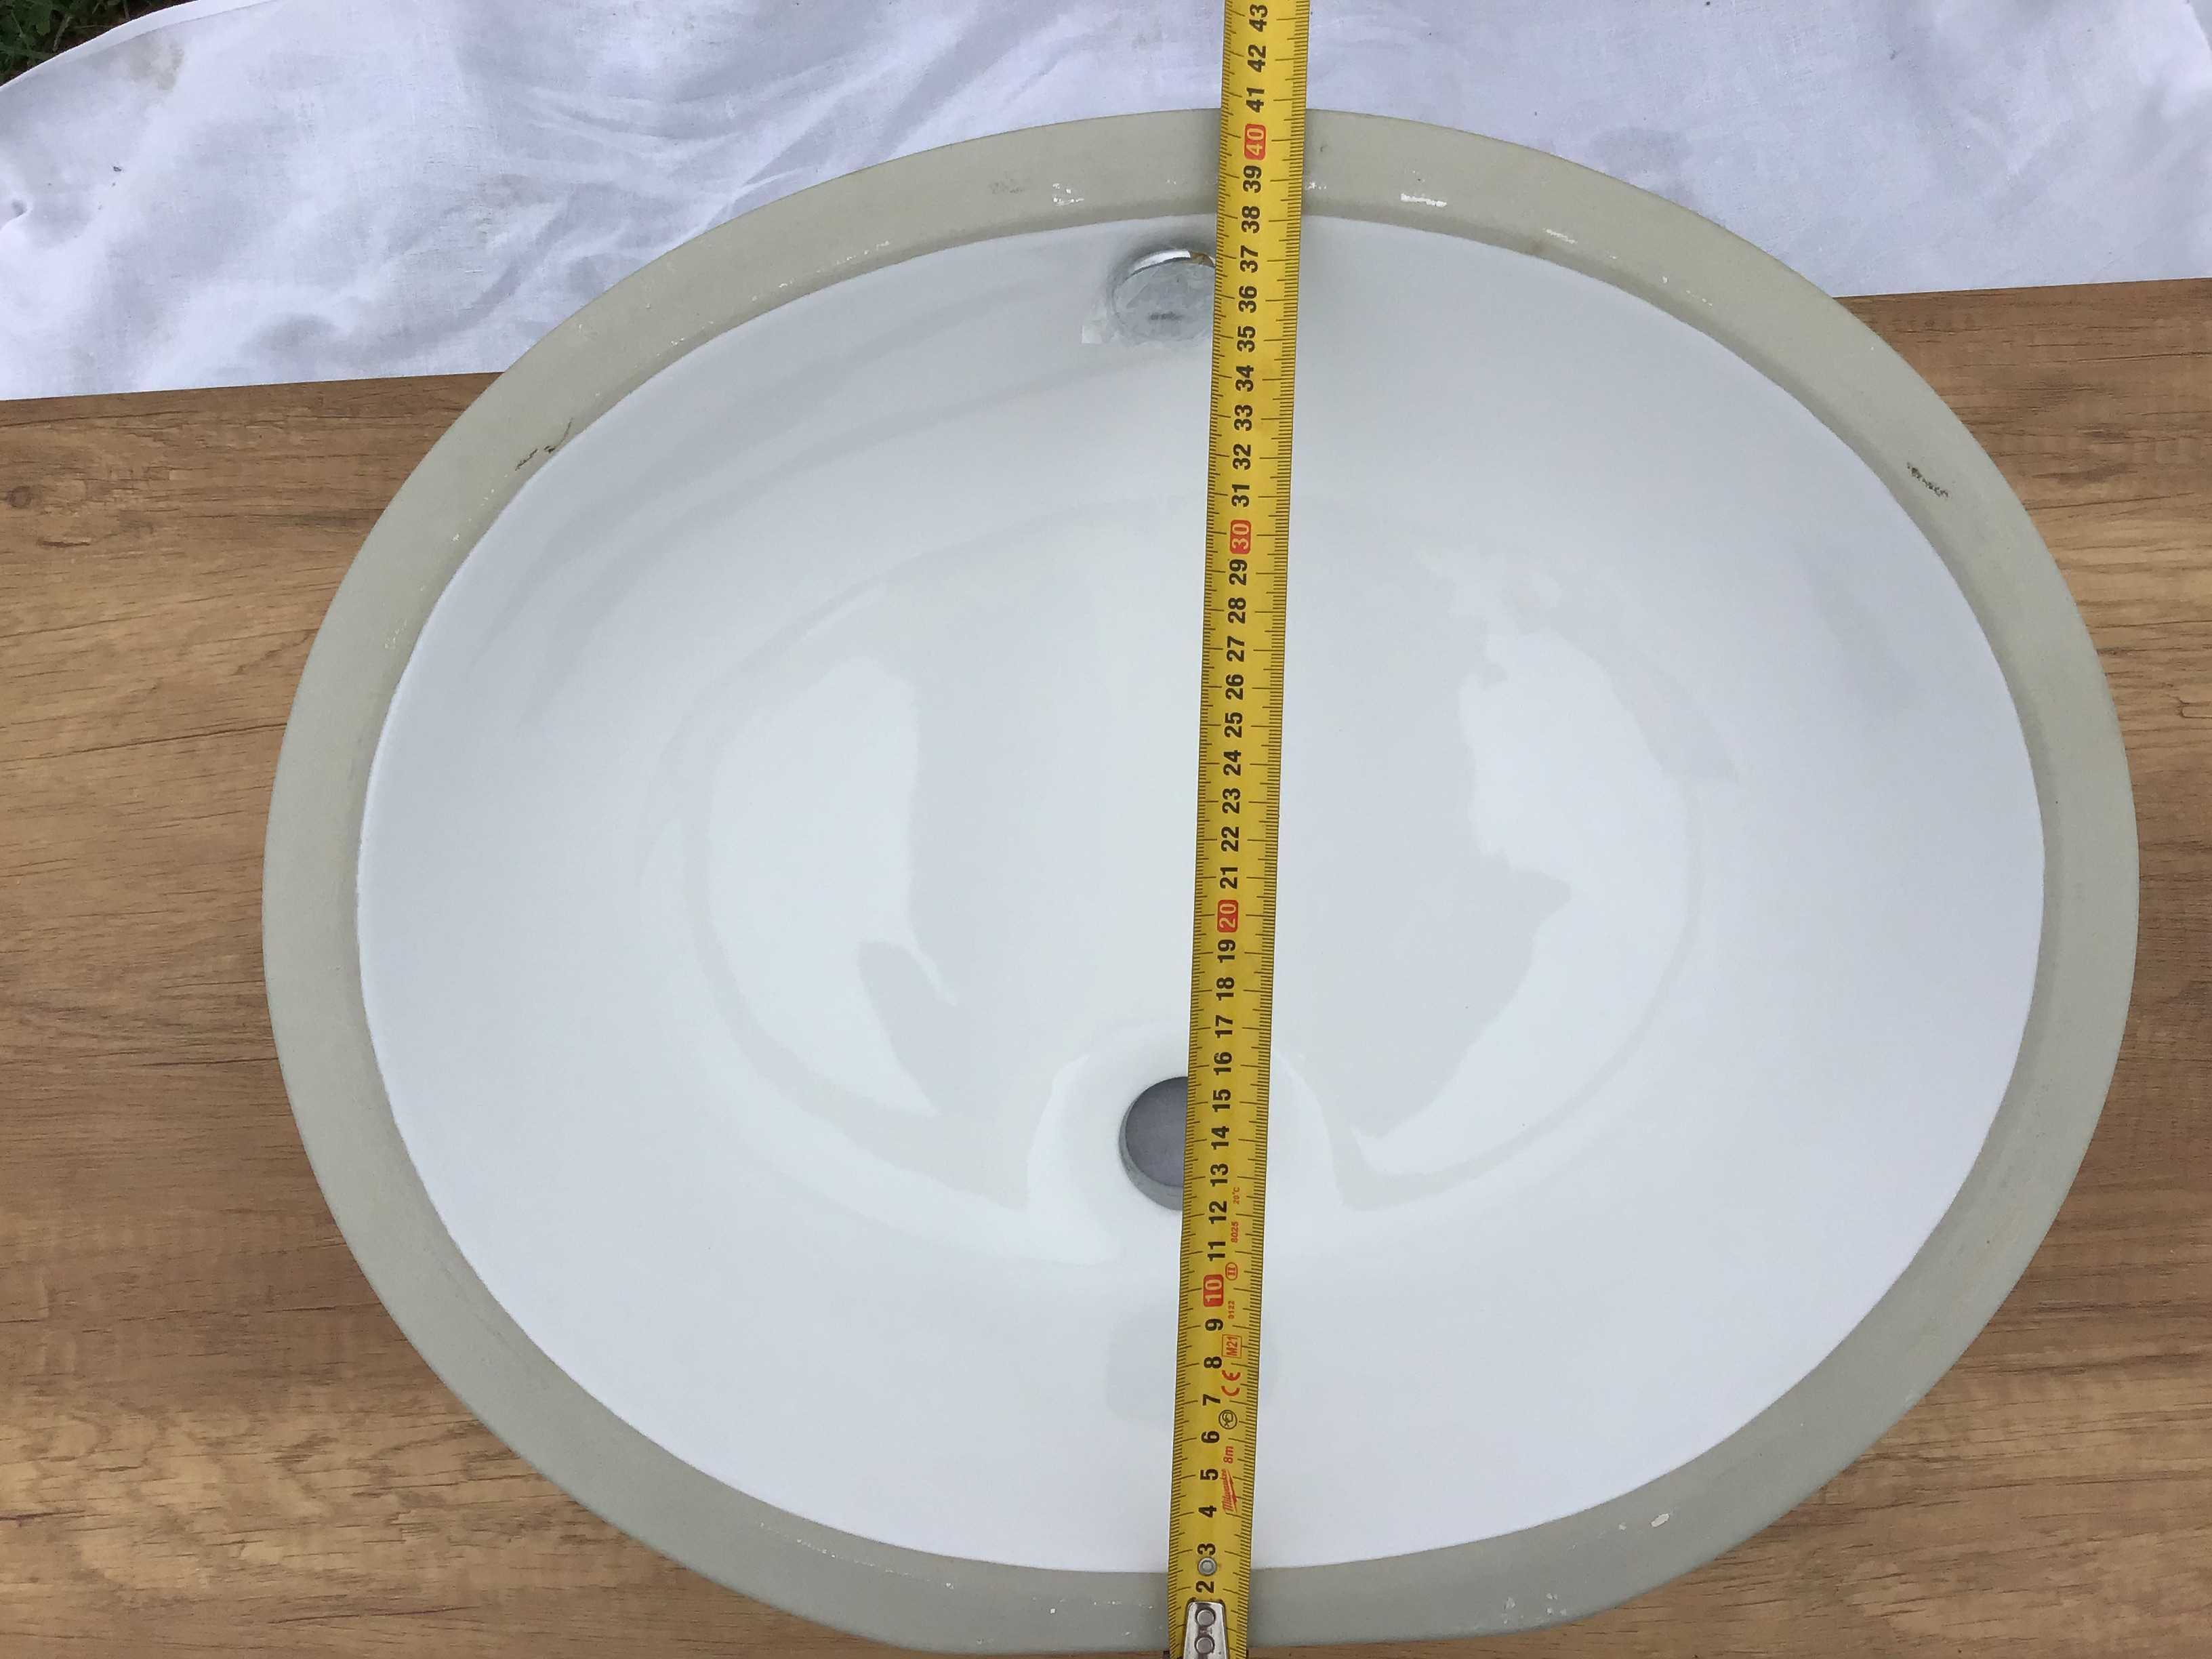 Umywalka podblatowa okrągła biała 41cm